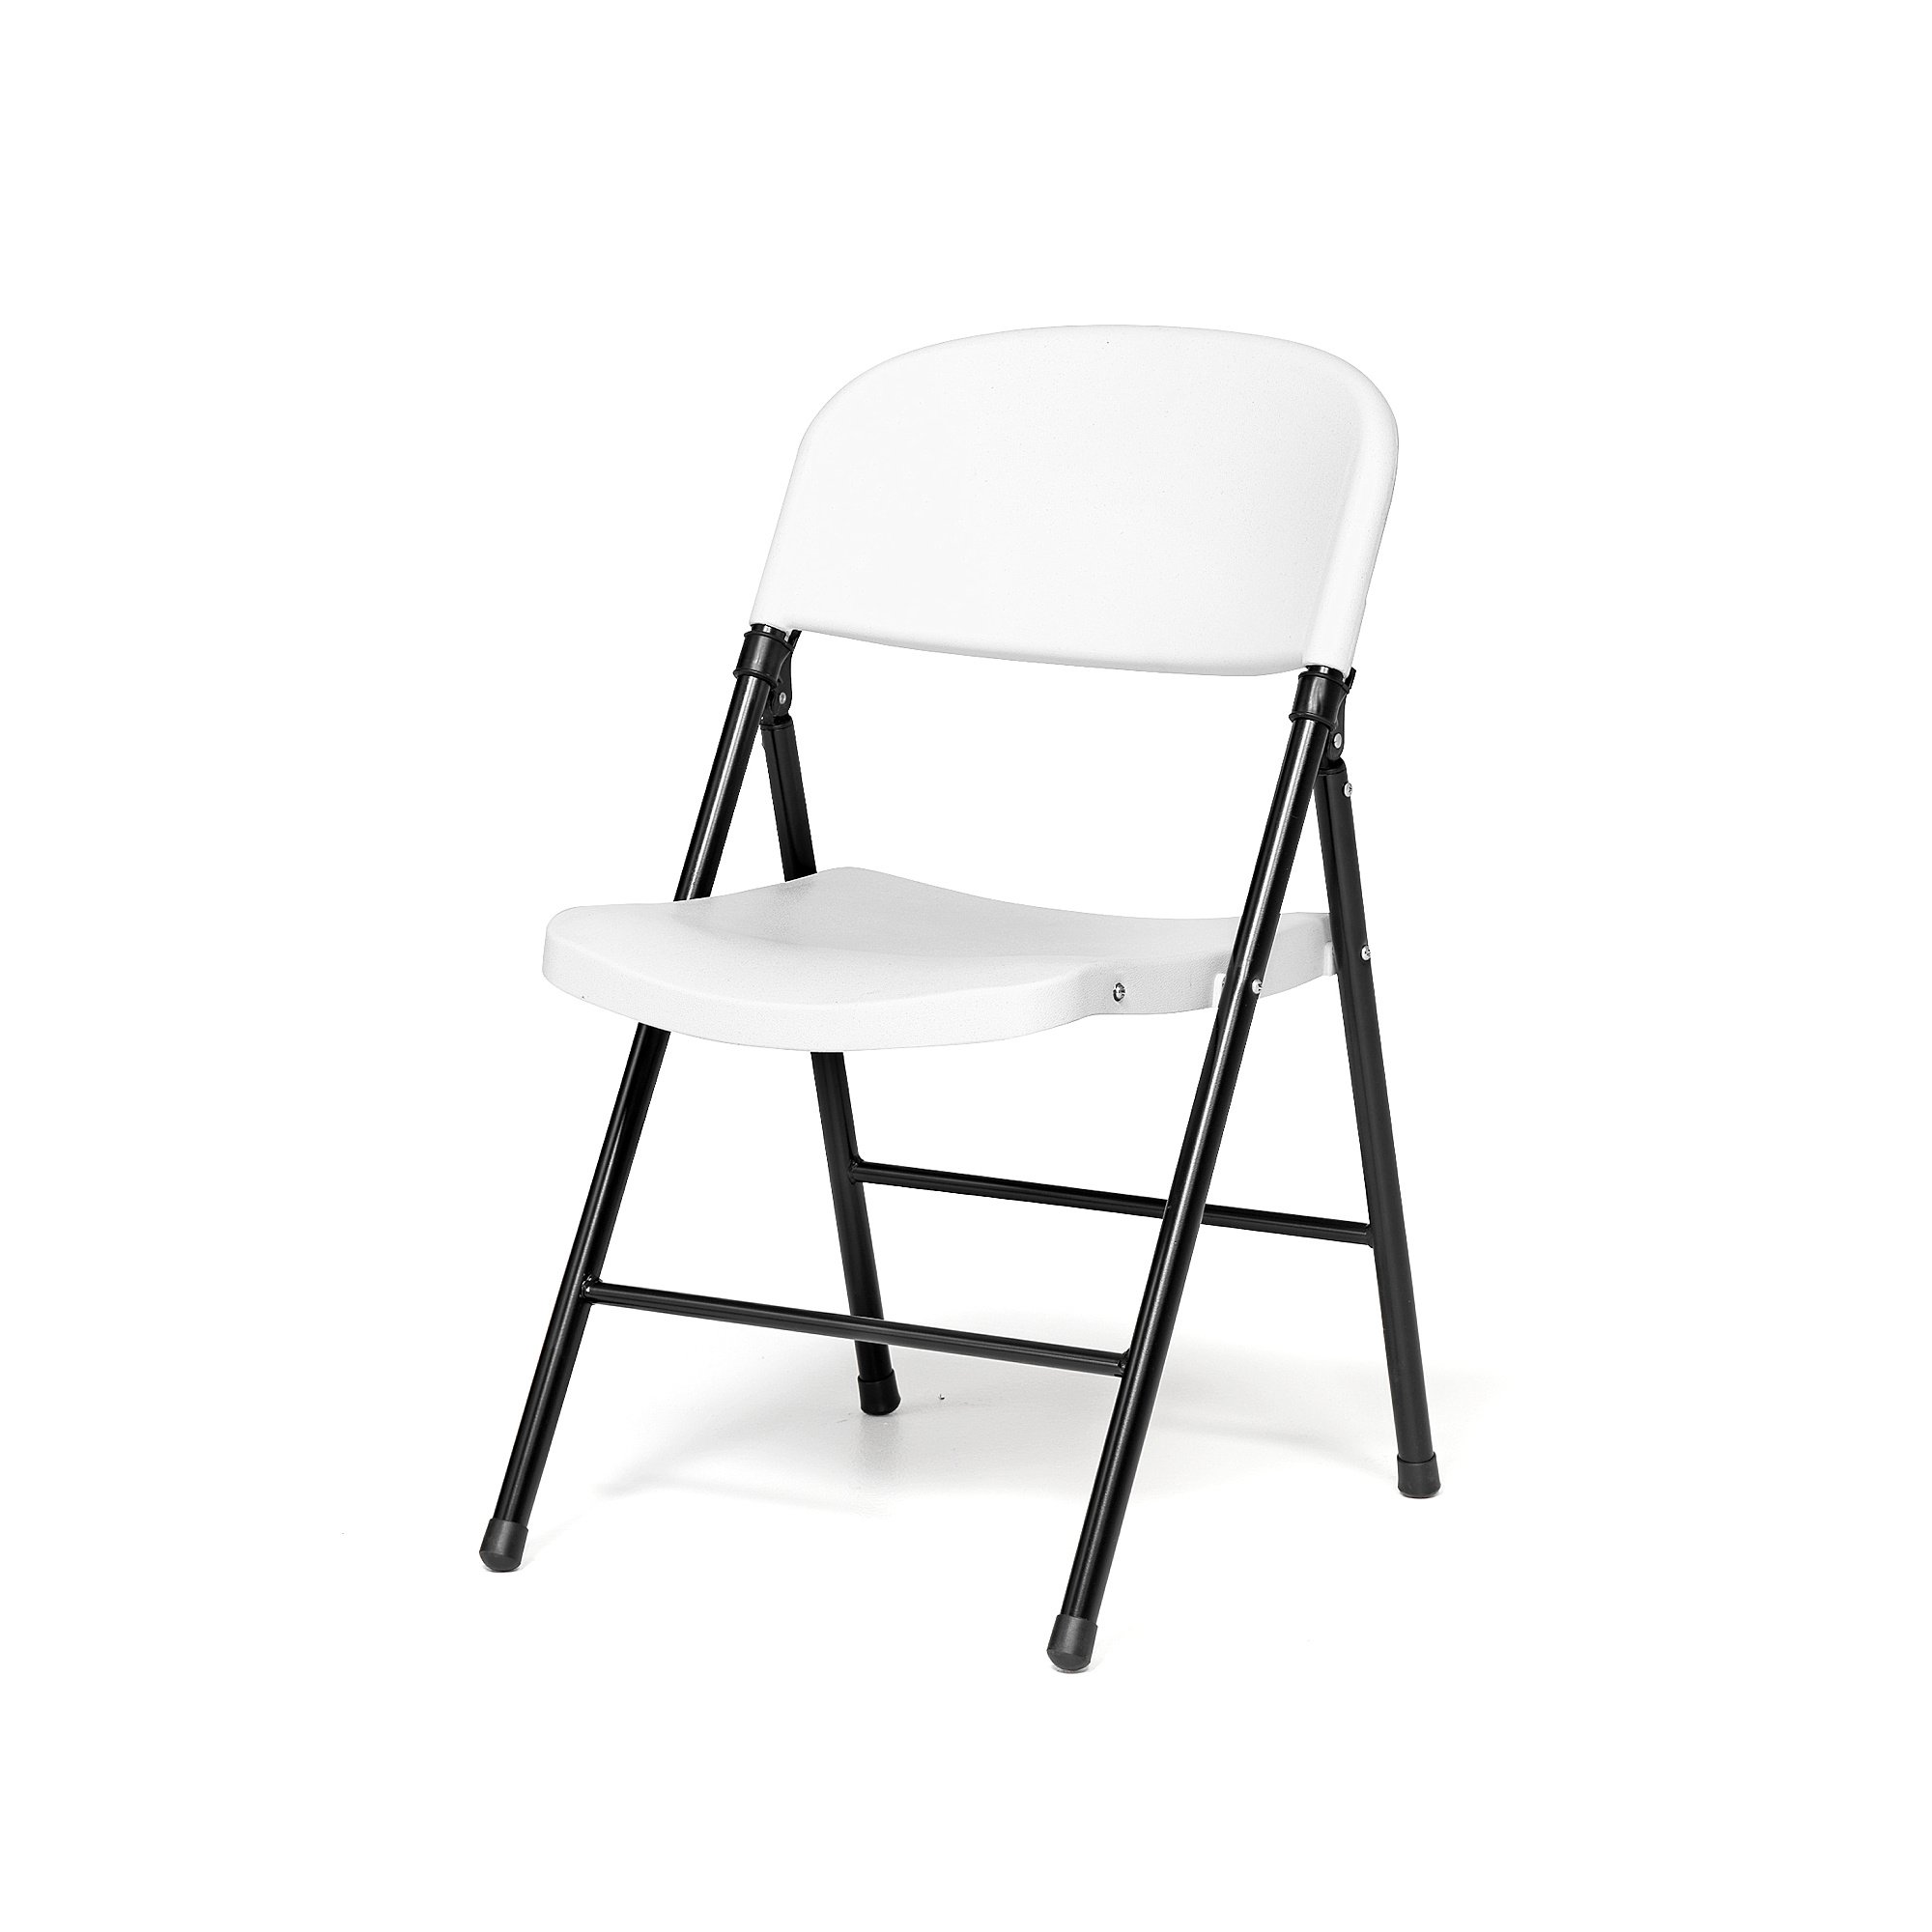 Skládací židle PAISLEY, plastová, bílá/černá